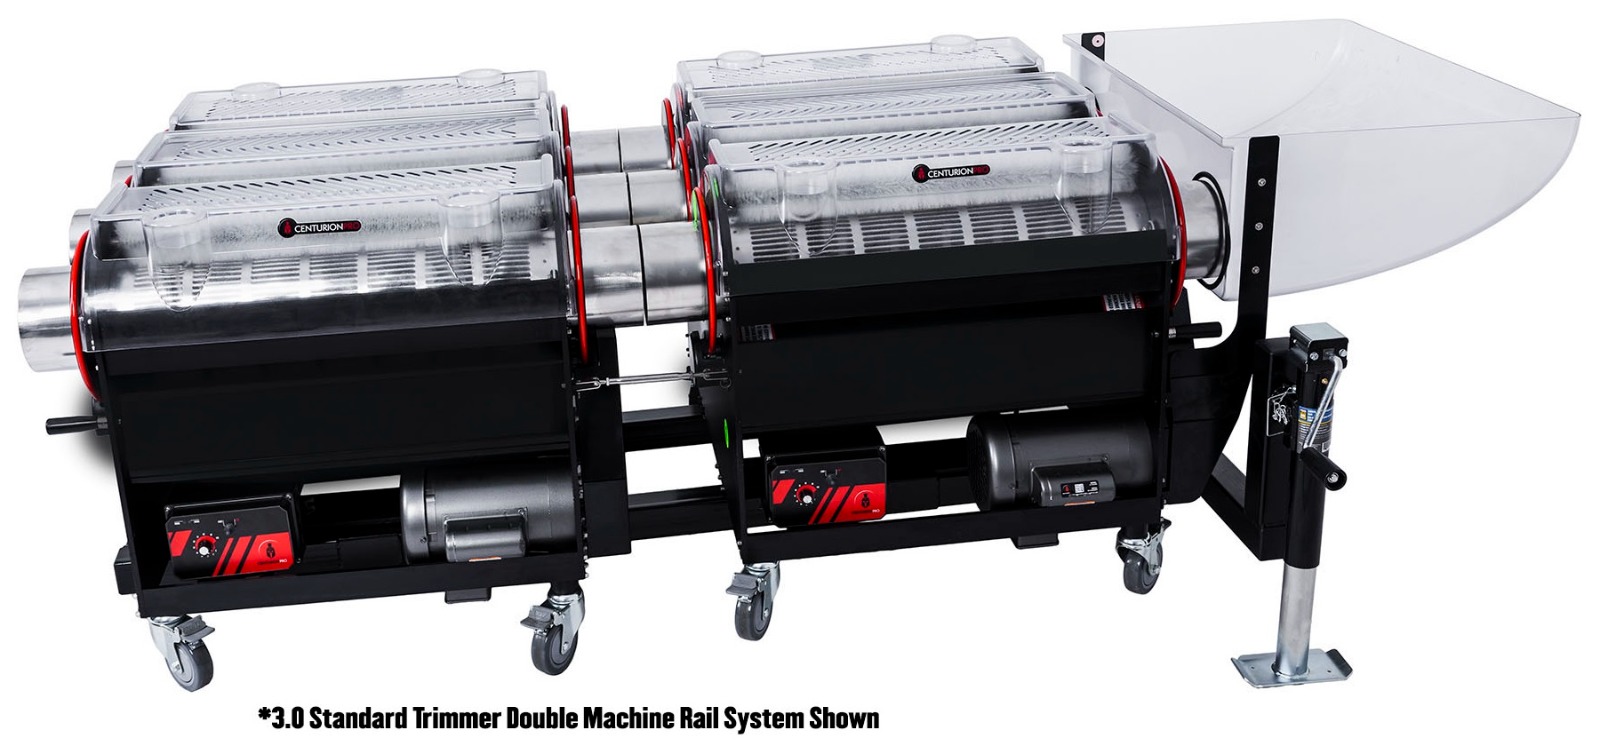 Centurion 3.0 Standard Trimmer Double Machine Rail System